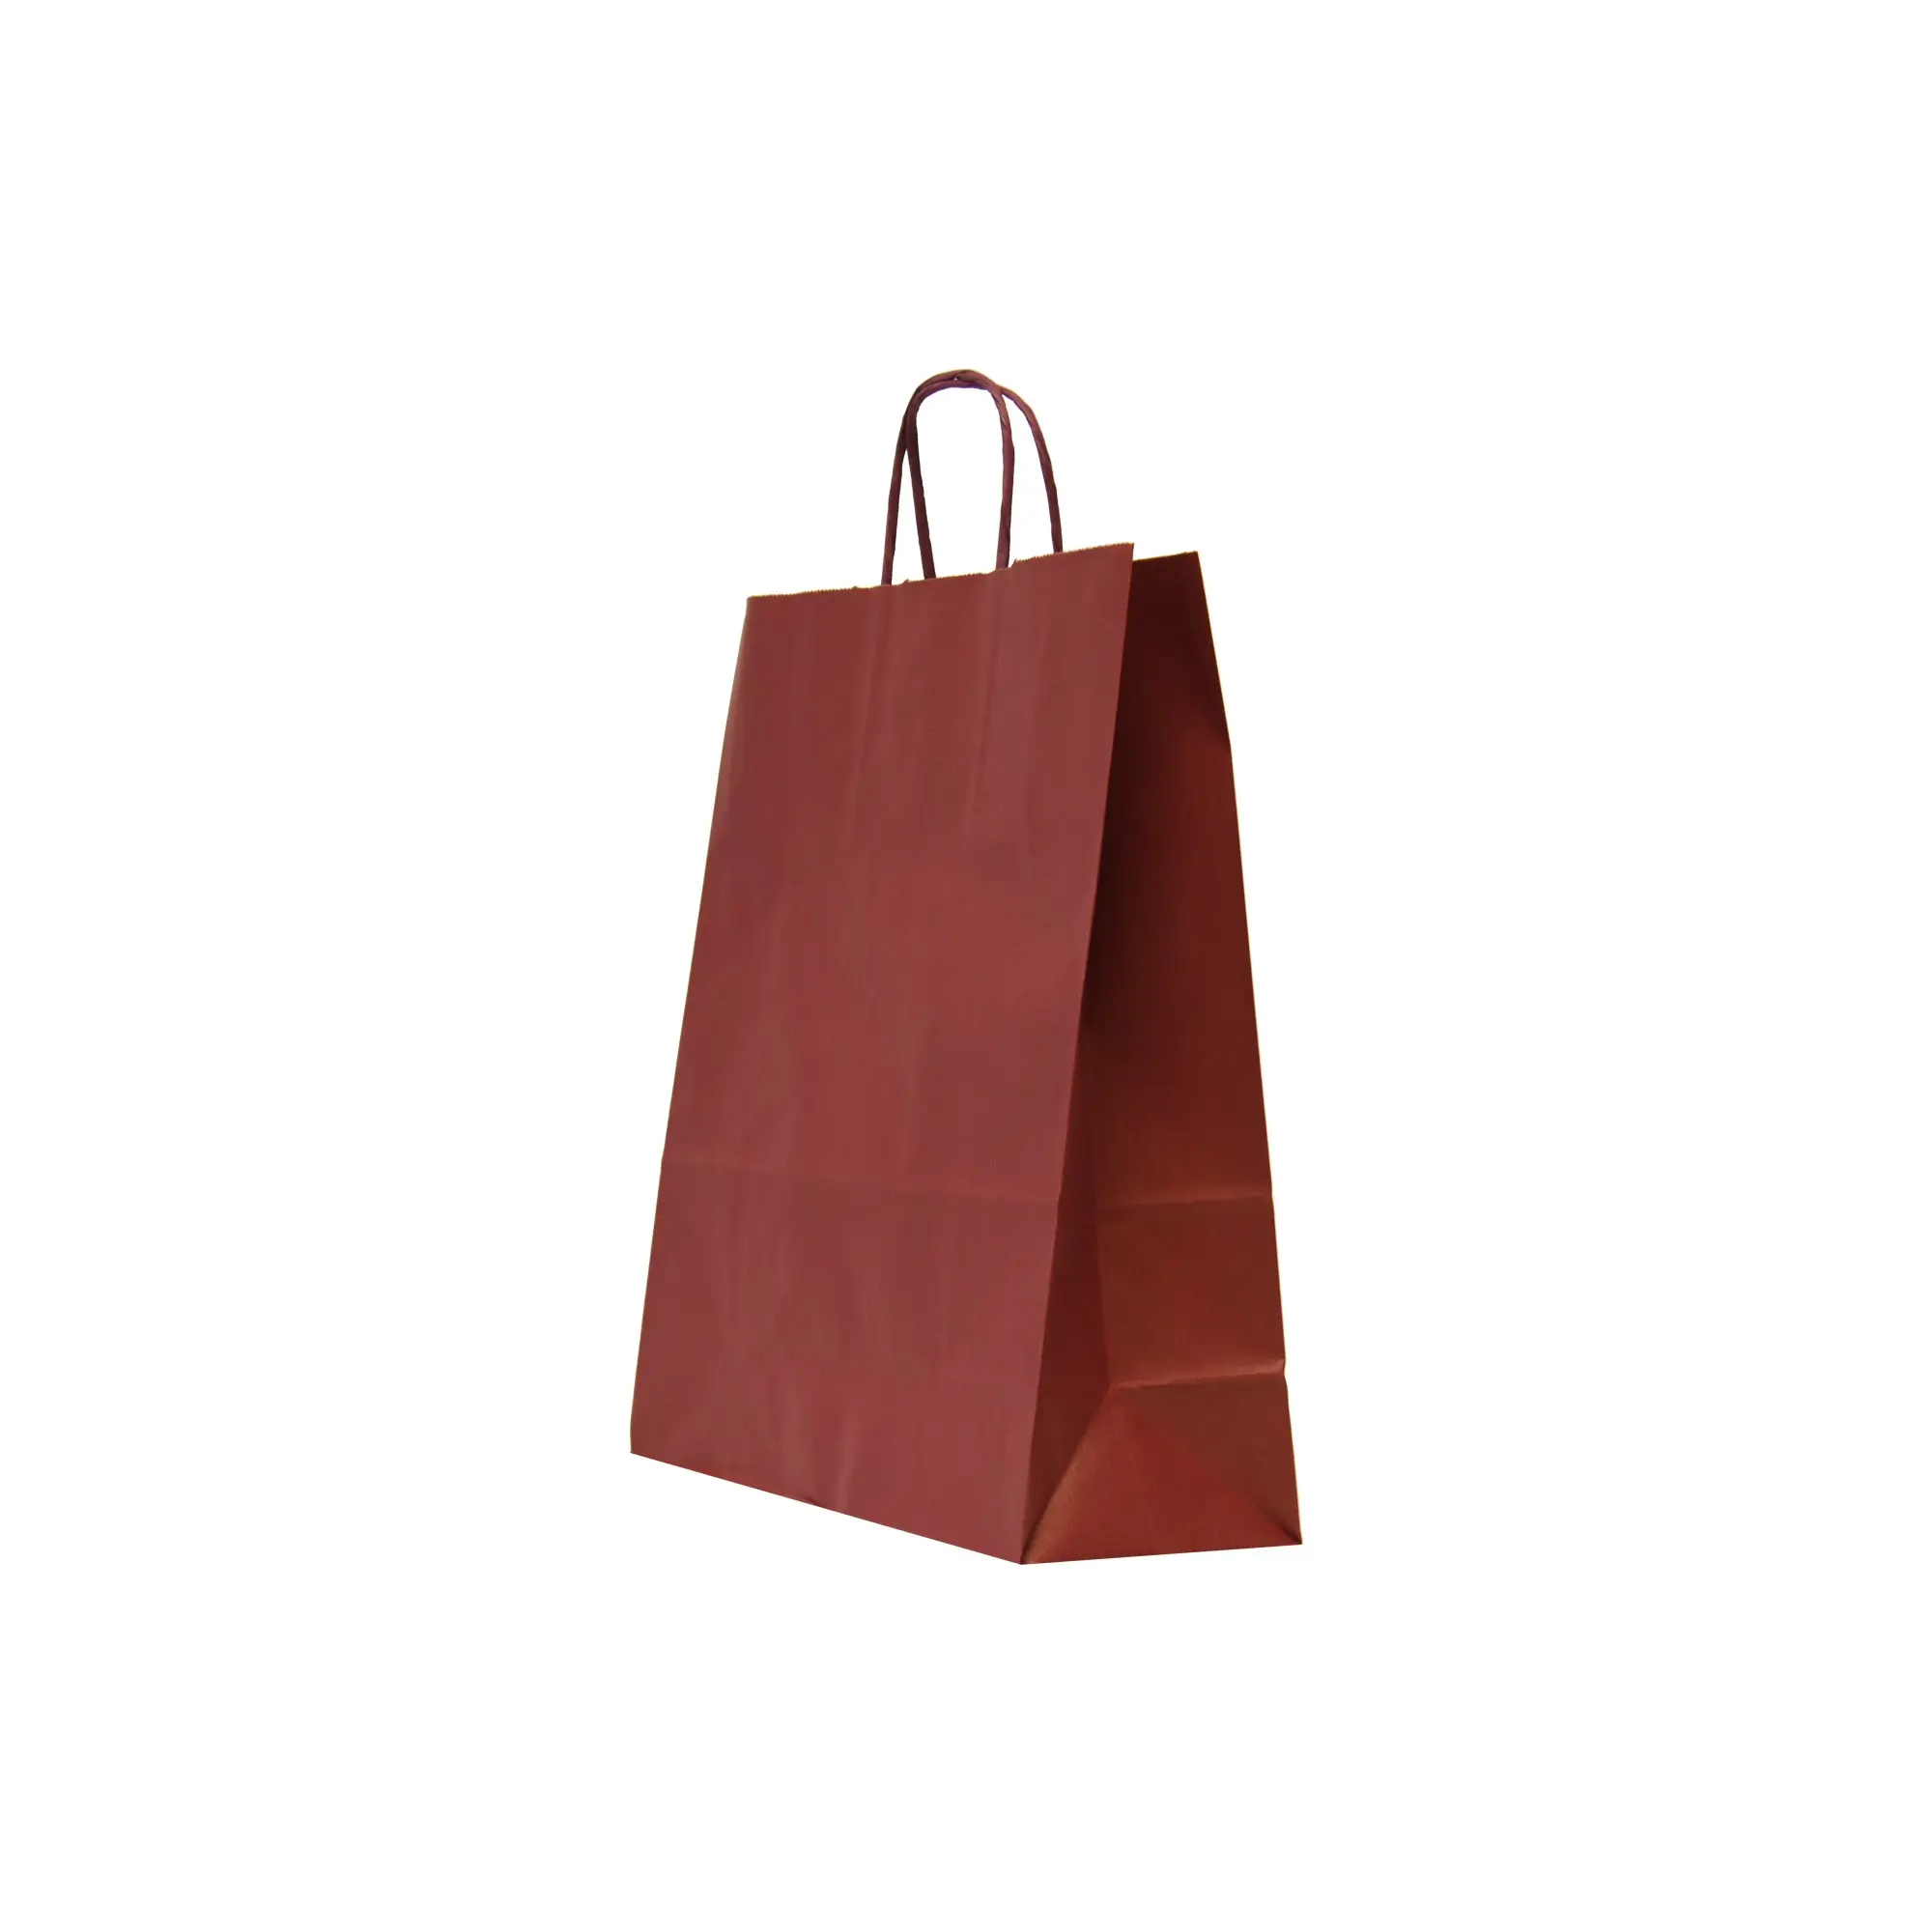 Meilleure vente sac en papier avec poignée torsadée Offre Spéciale sacs en papier avec votre propre Logo couleur et Design sacs d'épicerie